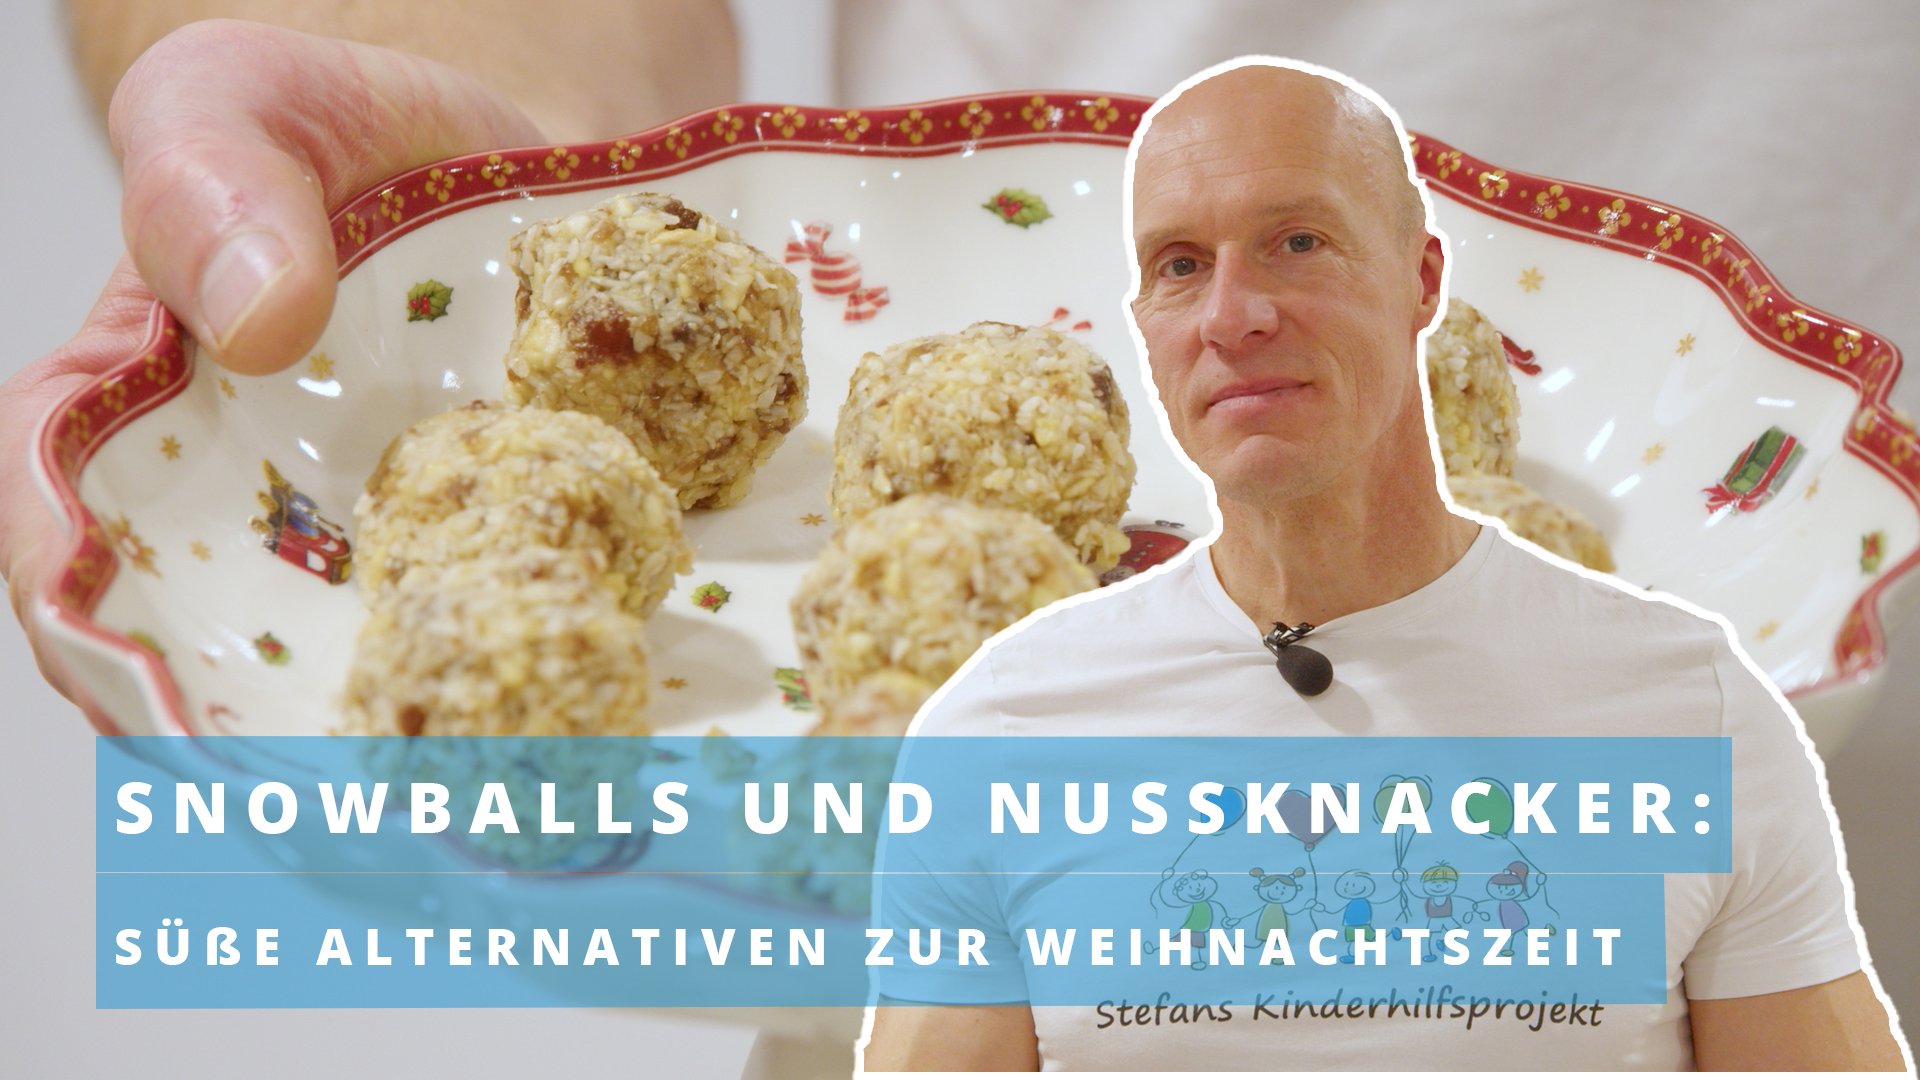 Snowballs und Nussknacker: Süße Alternativen zur Weihnachtszeit 